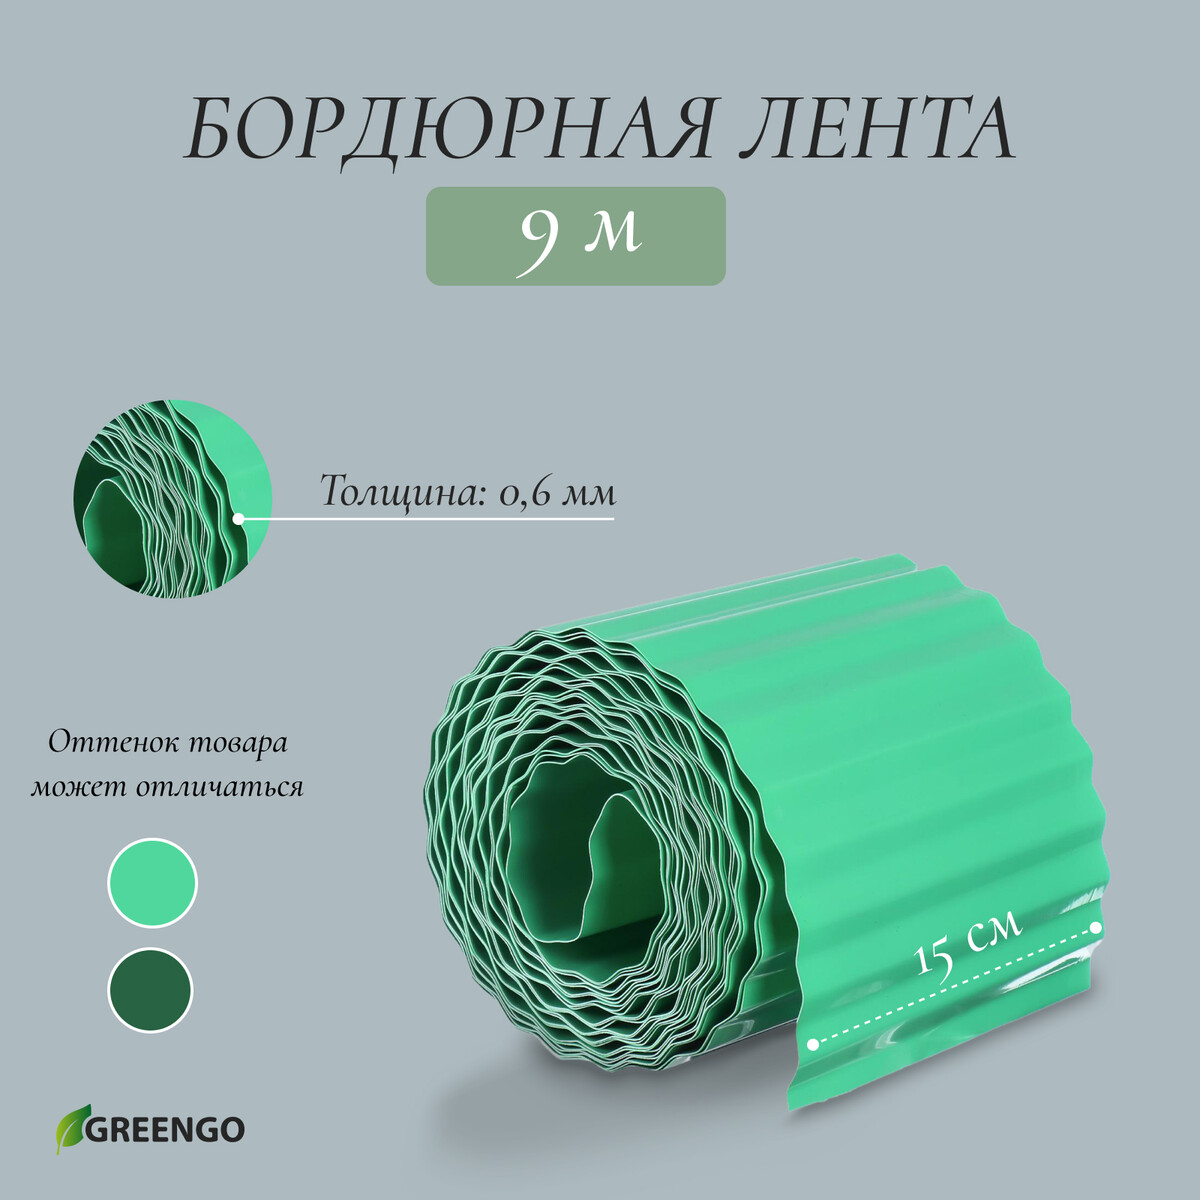 Лента бордюрная, 0.15 × 9 м, толщина 0.6 мм, пластиковая, гофра, зеленая, greengo лента бордюрная 0 2 × 9 м толщина 1 2 мм пластиковая фигурная коричневая greengo